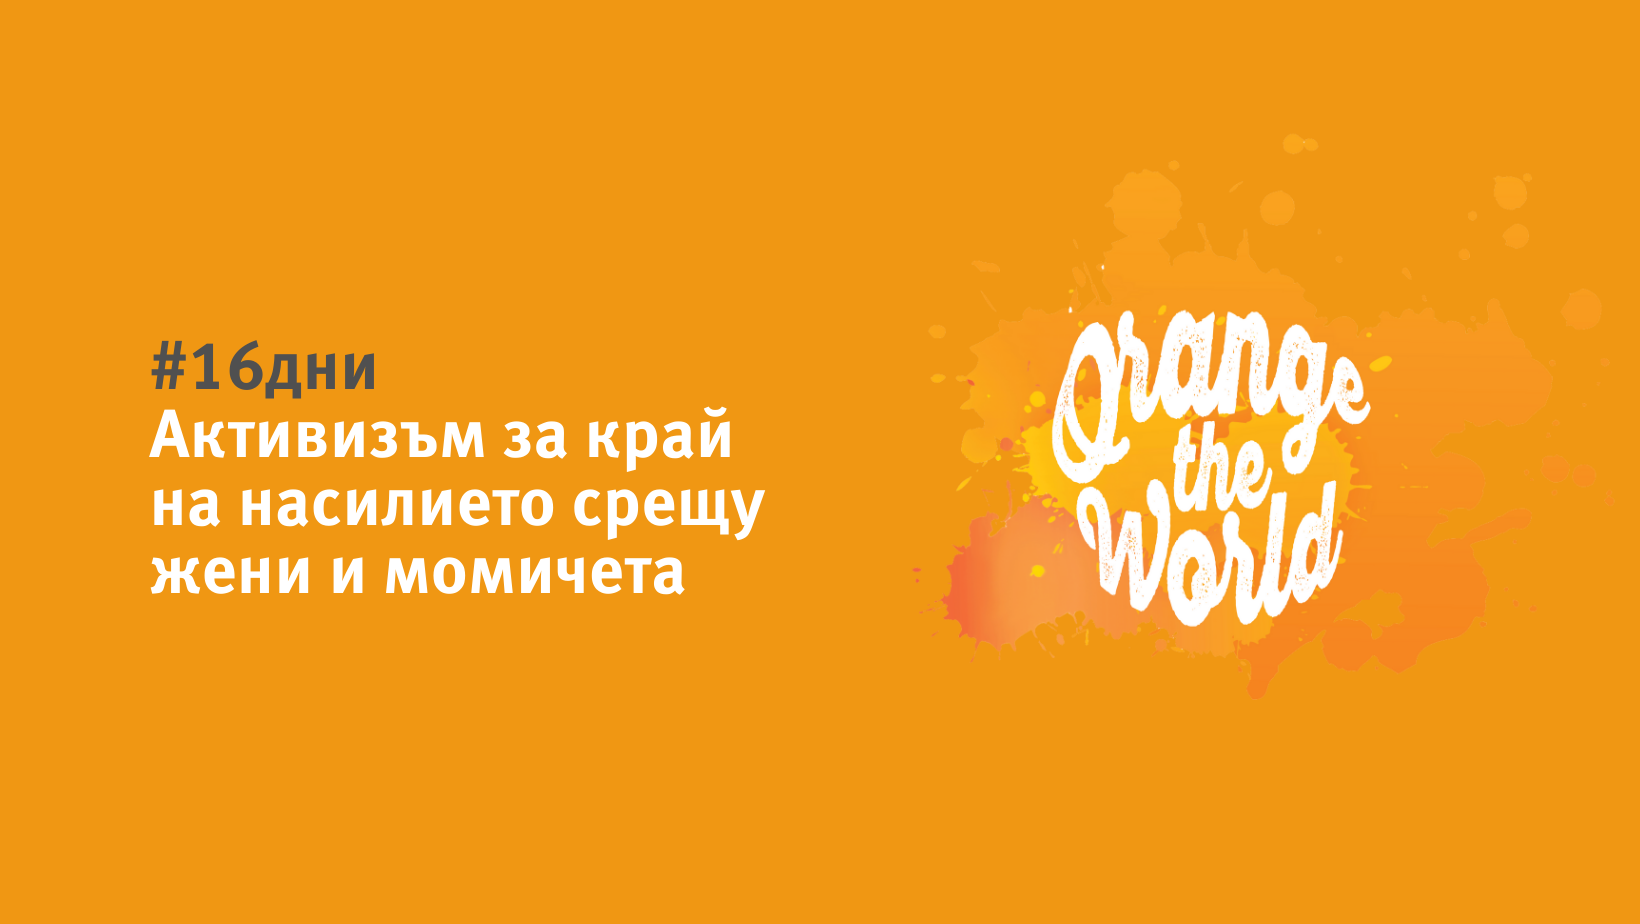 КОНКОРДИЯ България се включва в инициативата #16 дни на активизъм срещу насилието, основано на пола